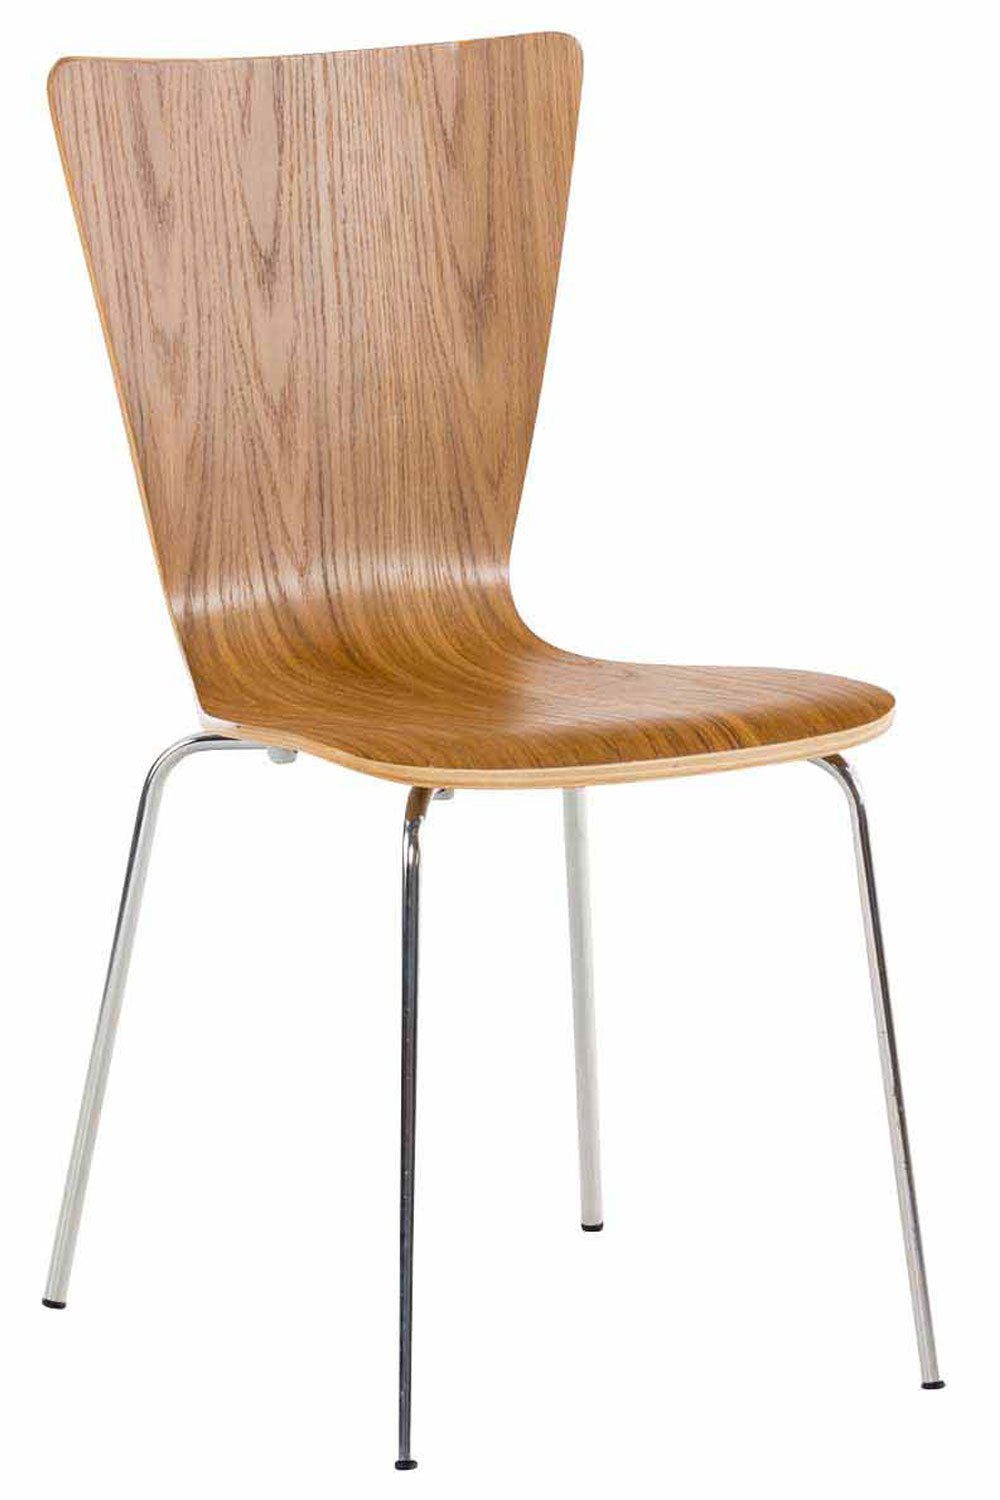 Holz Konferenzstuhl Warteraumstuhl Gestell: Besucherstuhl chrom Sitzfläche: Messestuhl), ergonomisch - Jaron eiche TPFLiving geformter Metall mit - - Sitzfläche - (Besprechungsstuhl